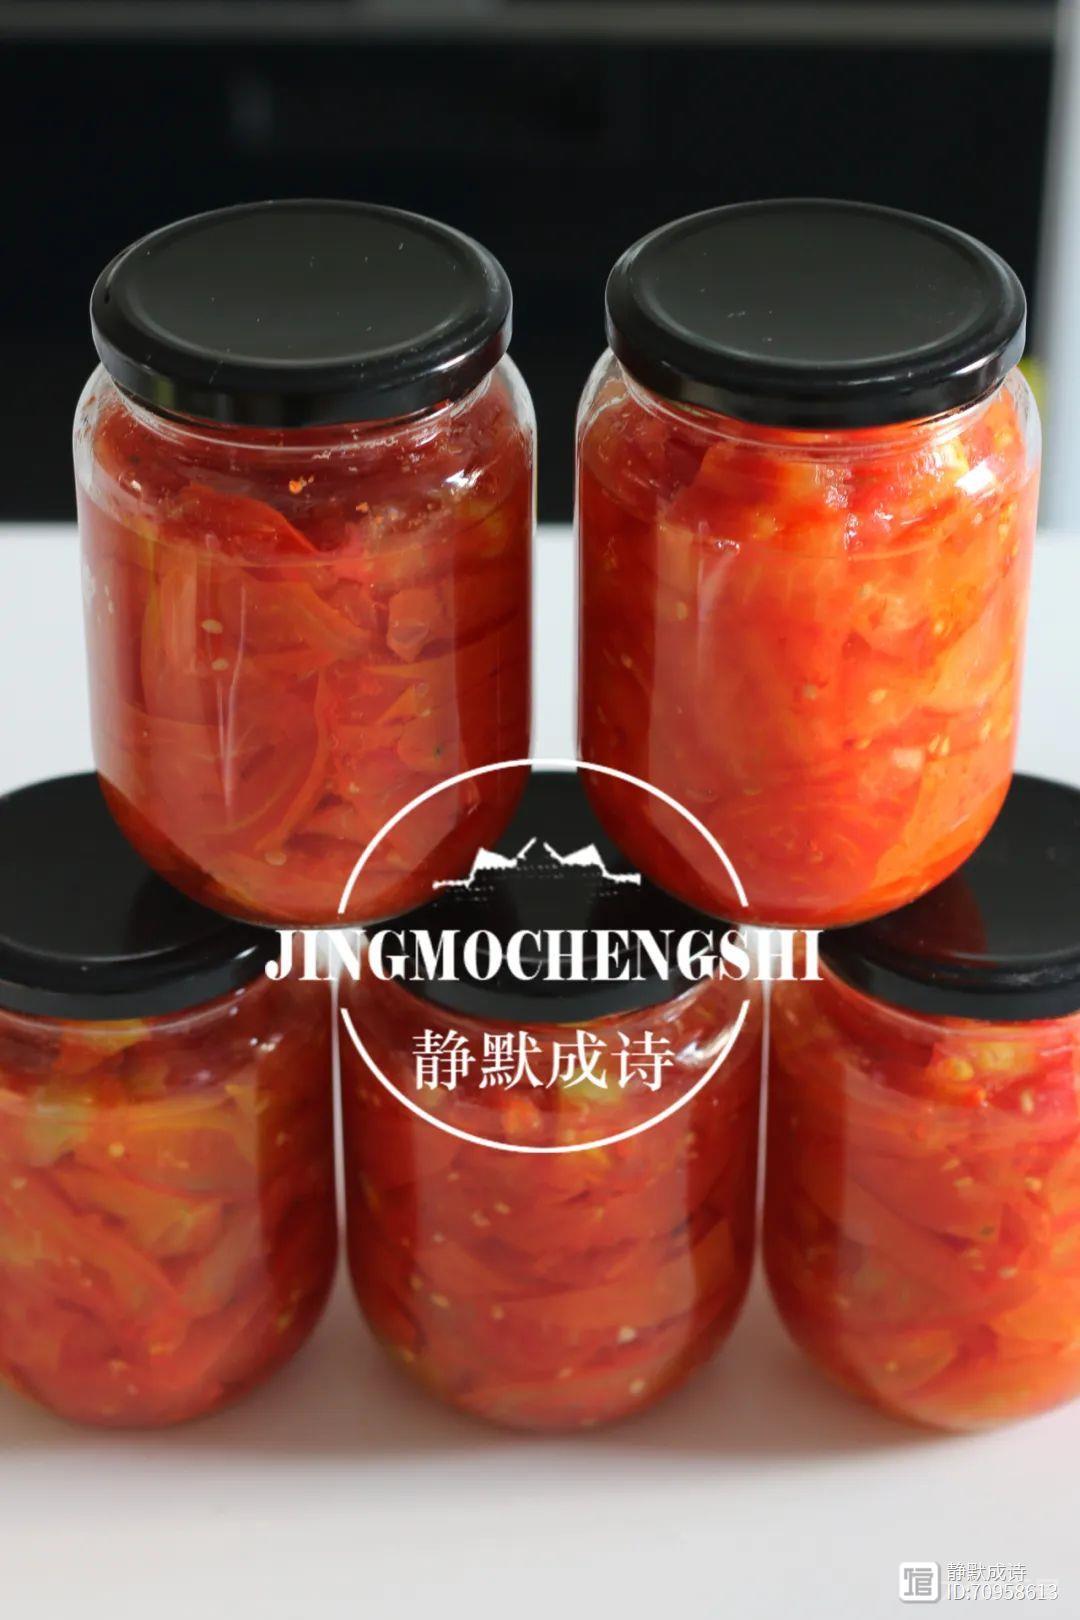 把西红柿做成酱留到冬天吃，重温儿时做法，满满的回忆